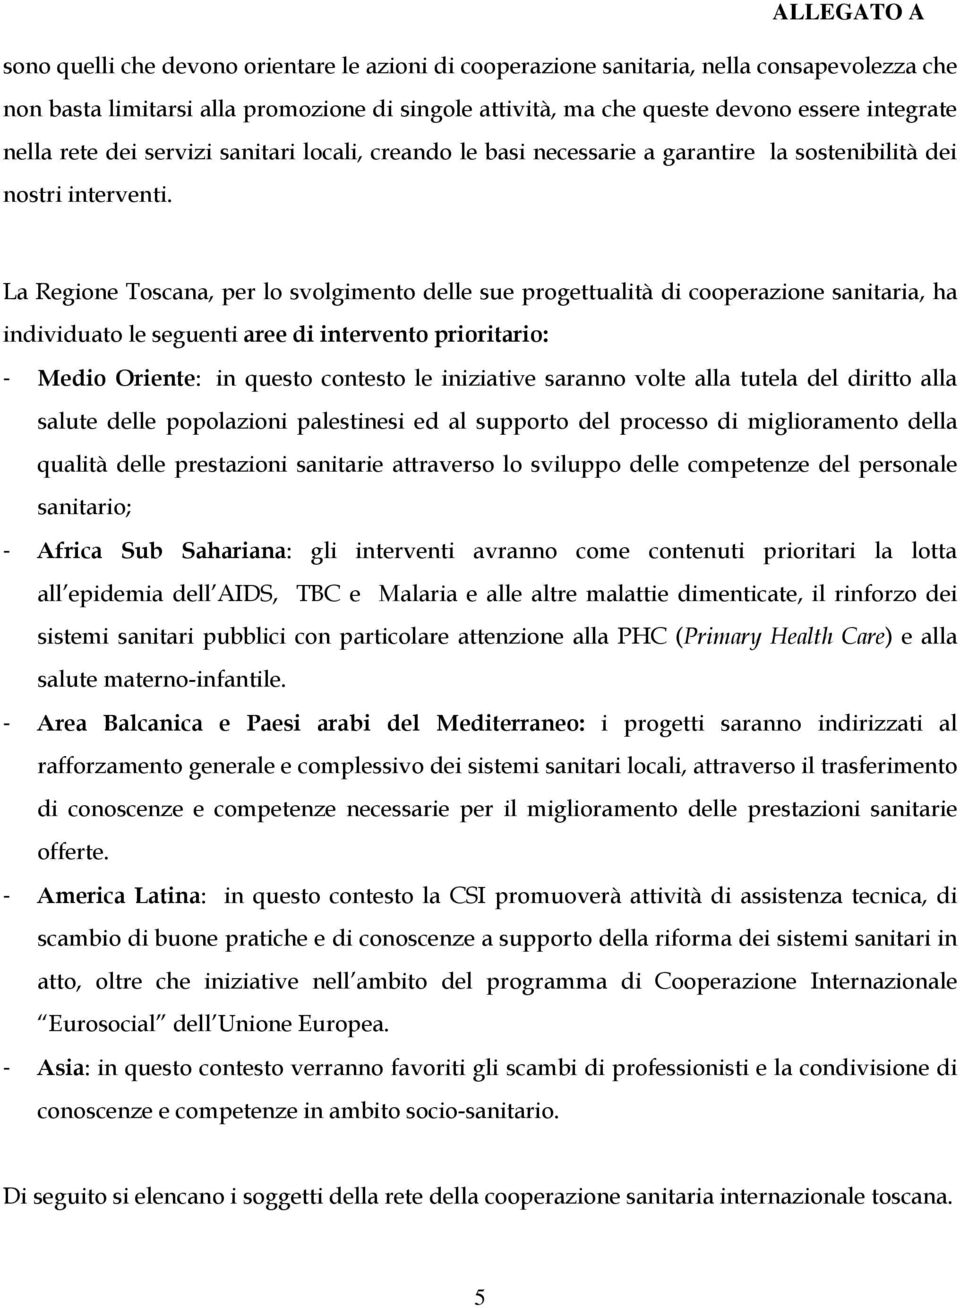 La Regione Toscana, per lo svolgimento delle sue progettualità di cooperazione sanitaria, ha individuato le seguenti aree di intervento prioritario: - Medio Oriente: in questo contesto le iniziative